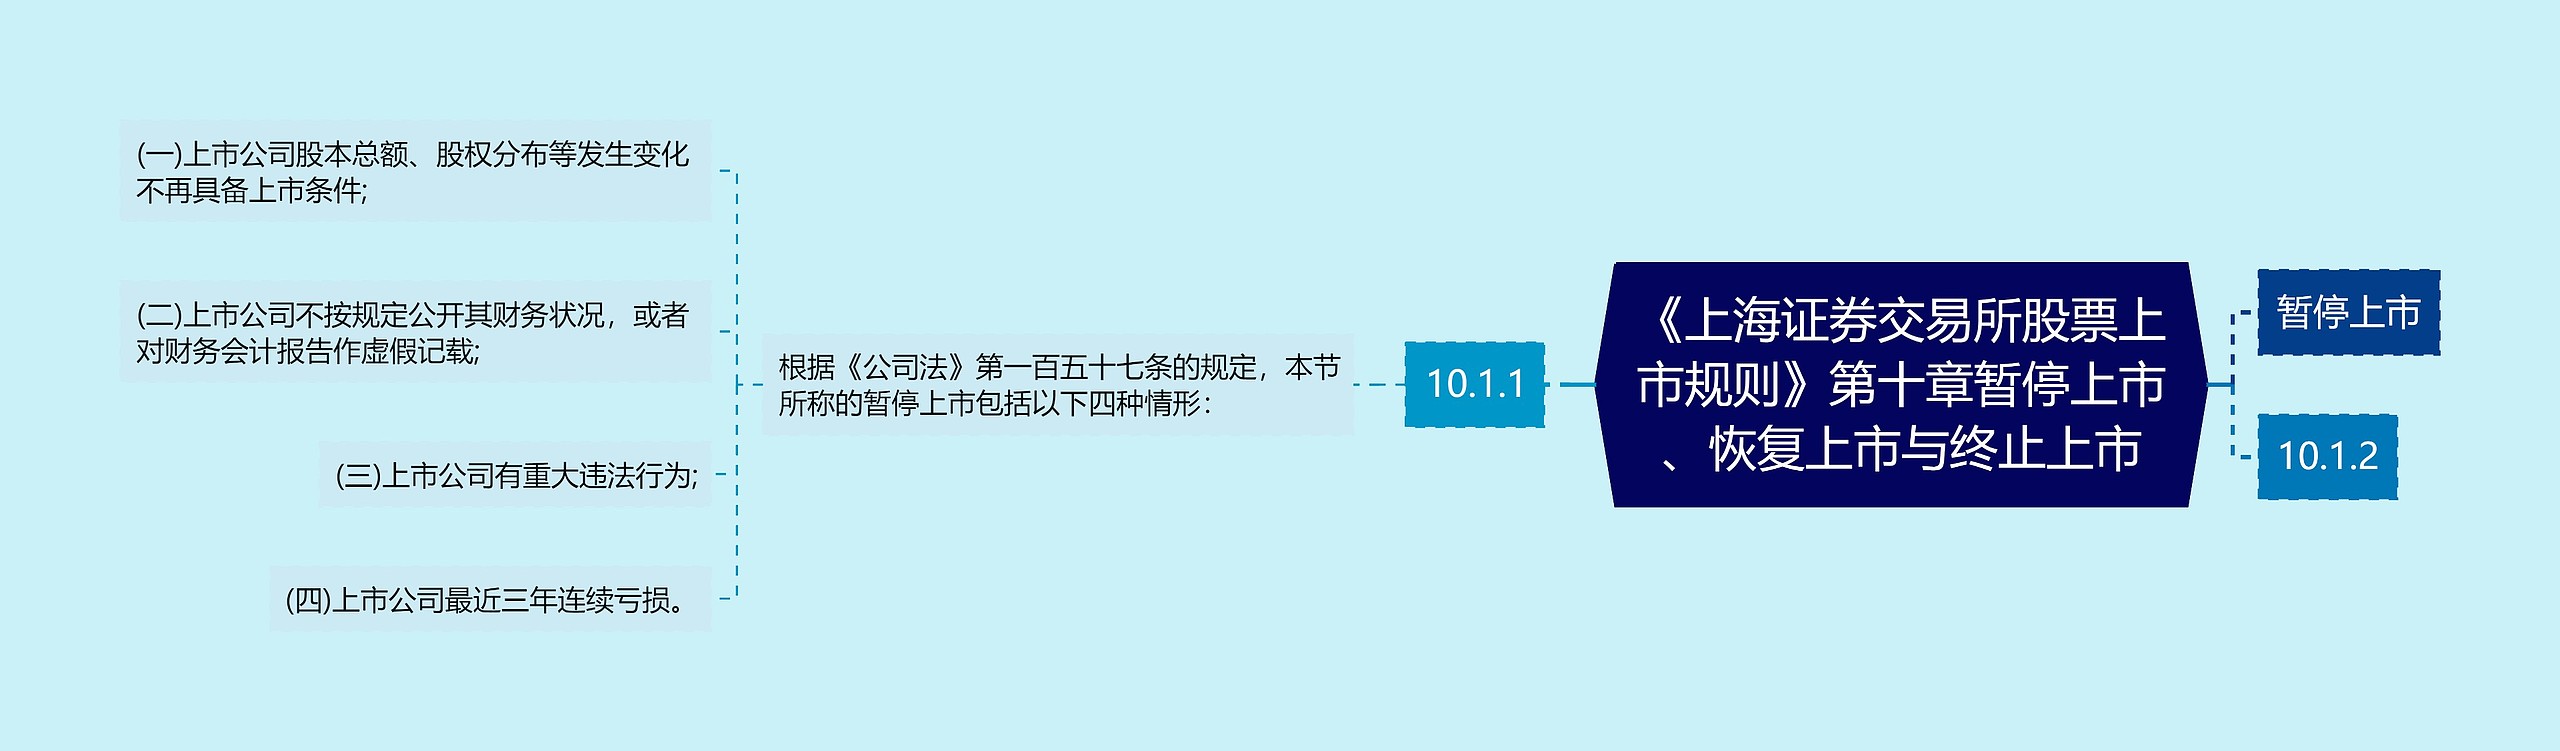 《上海证券交易所股票上市规则》第十章暂停上市、恢复上市与终止上市